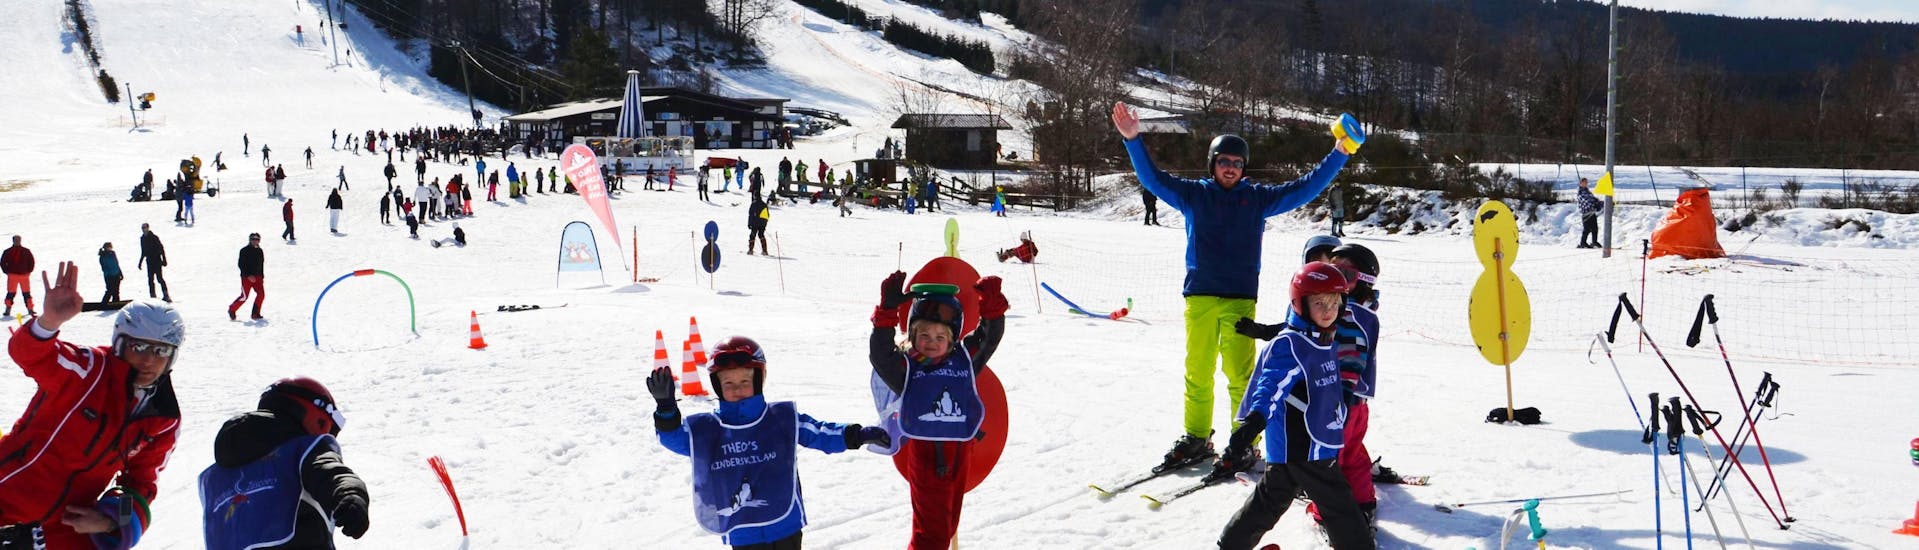 Clases de esquí para niños a partir de 5 años para todos los niveles.